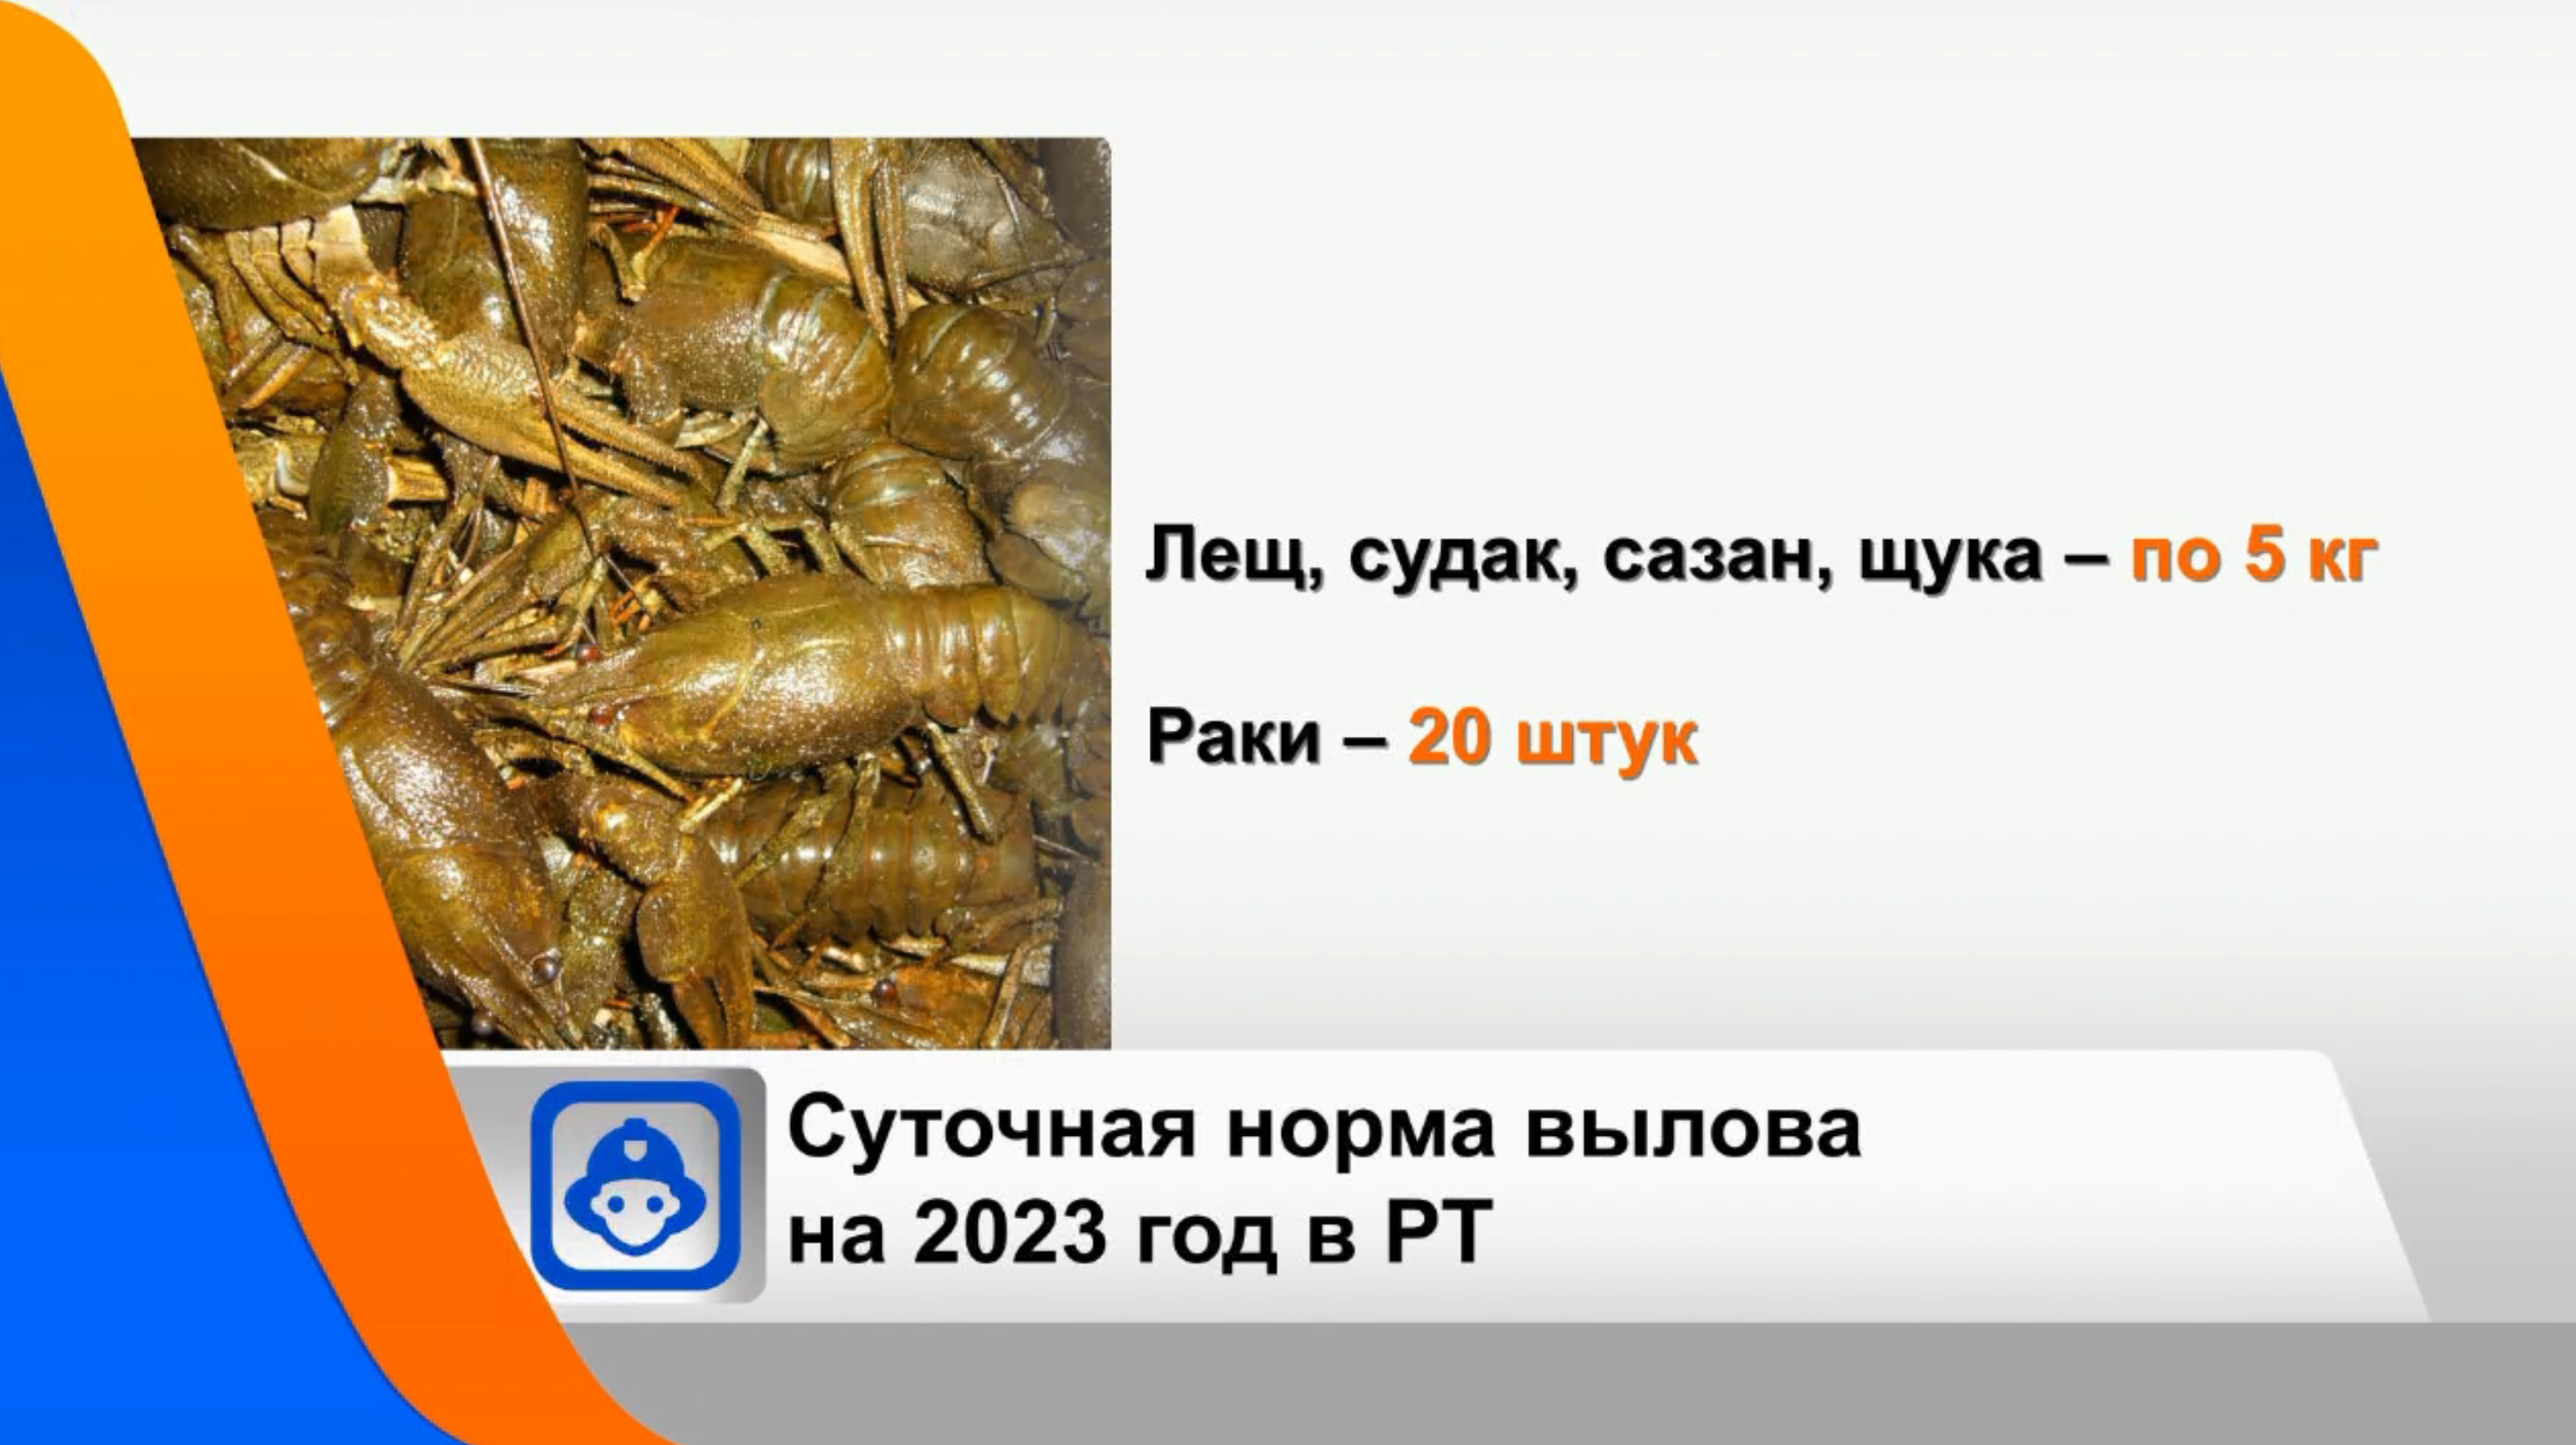 Нерестовый запрет в ростовской области 2024 год. Пираты поймали рыбу которую нельзя ловить. Рыба нежелательные события. Выловка рыбы запрещена.